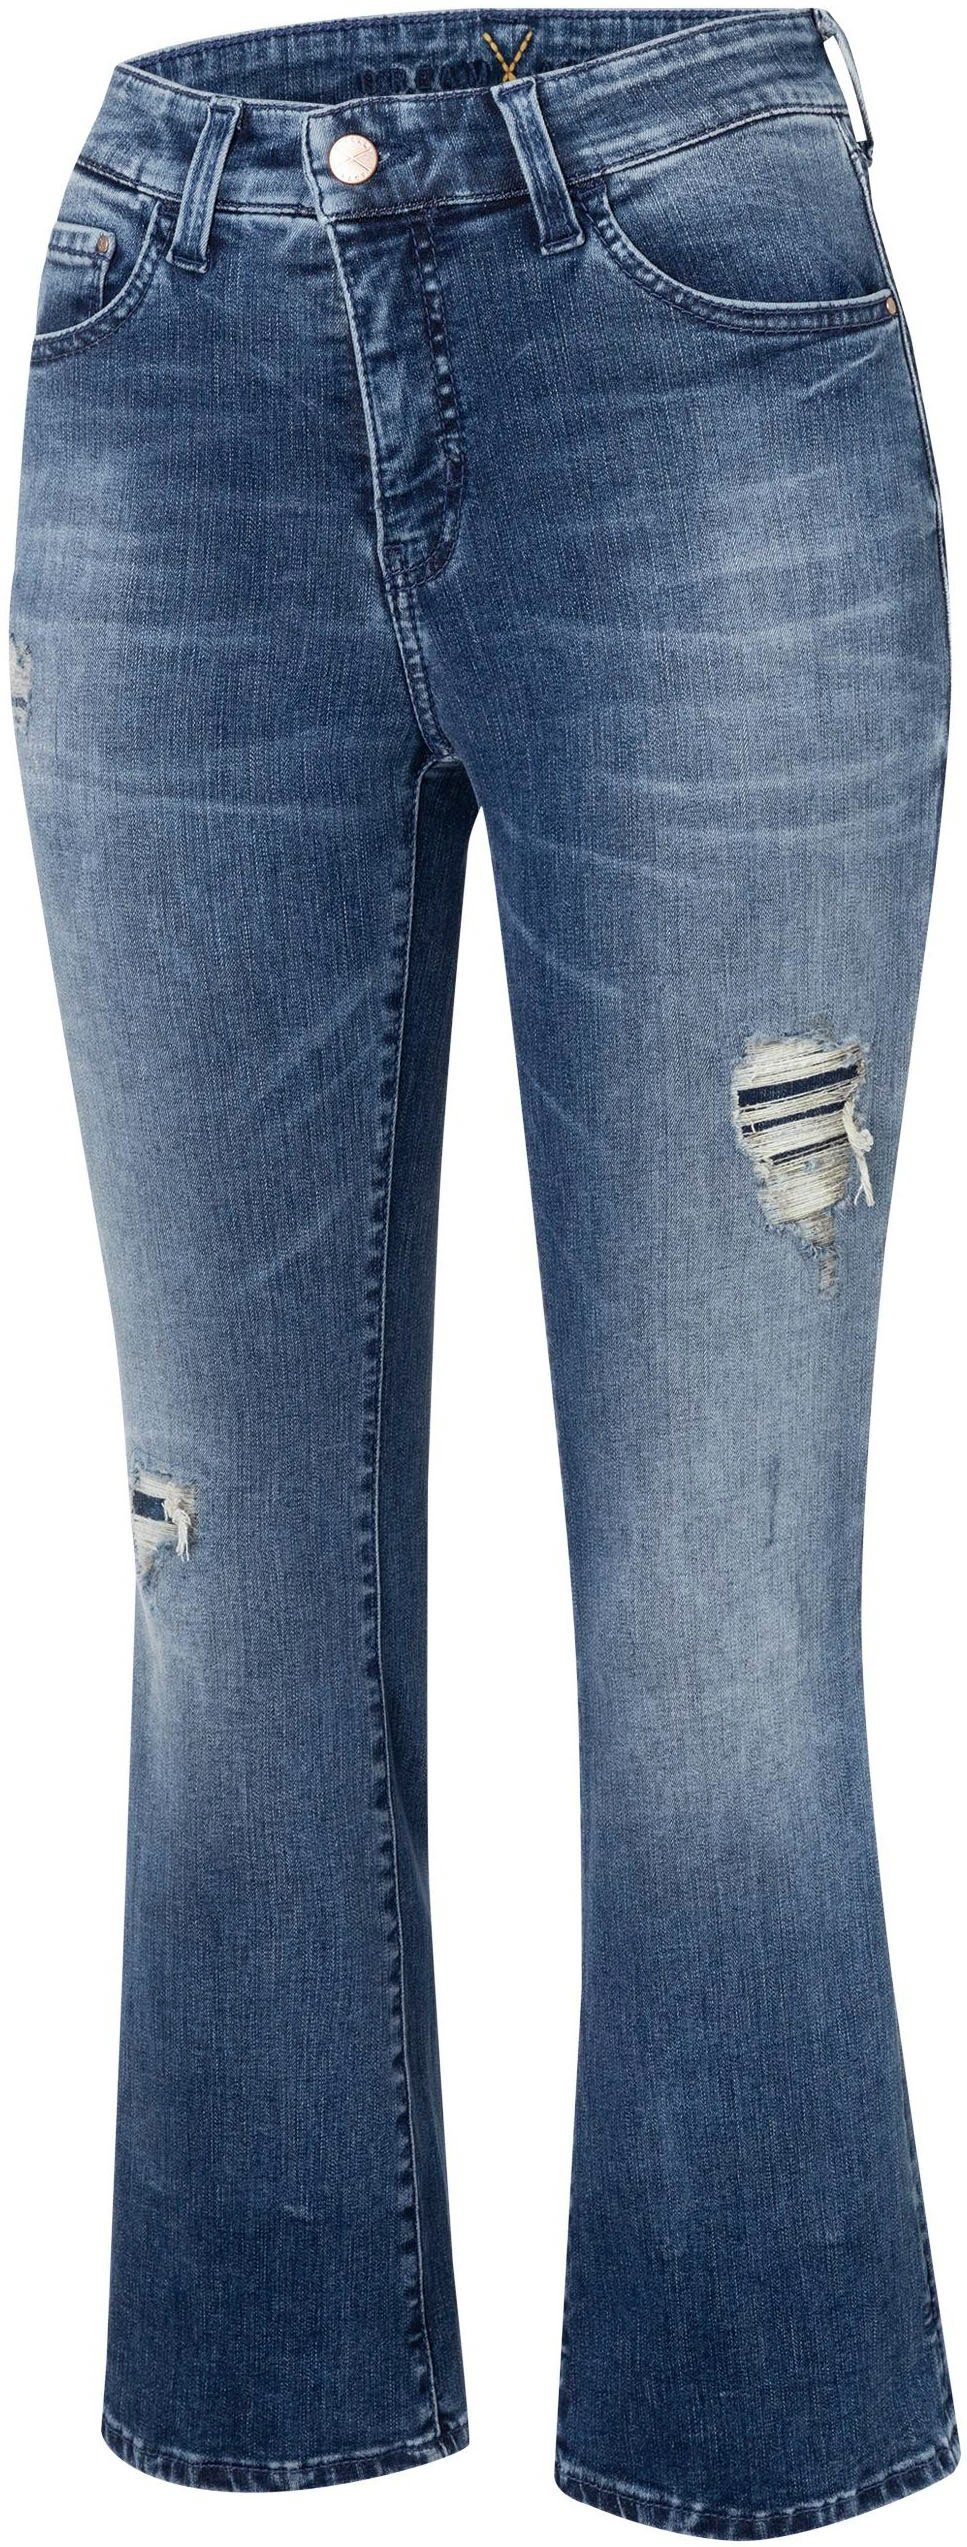 MAC 3/4-Jeans Dream Kick Saum modisch verkürzt dark leicht blue ausgestellt washed und